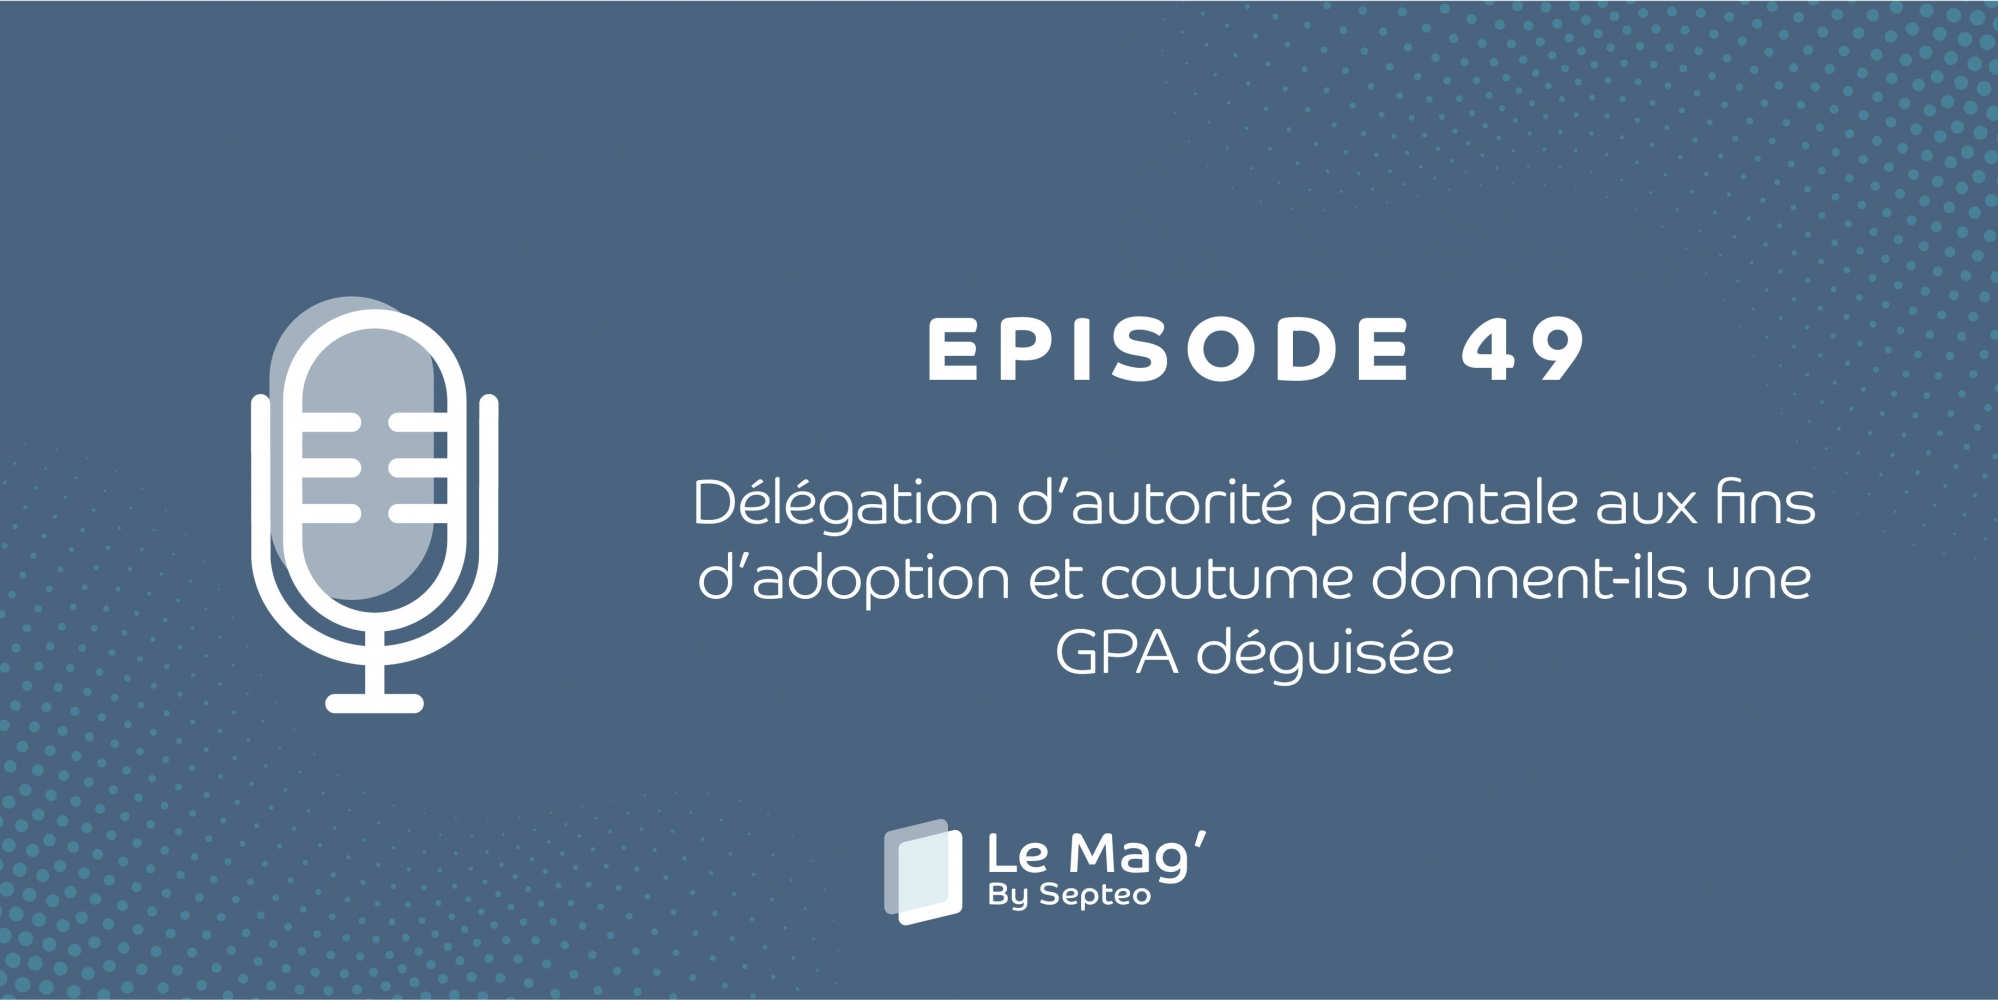 EPISODE 49 : Délégation d’autorité parentale aux fins d’adoption et coutume donnent-ils une GPA déguisée